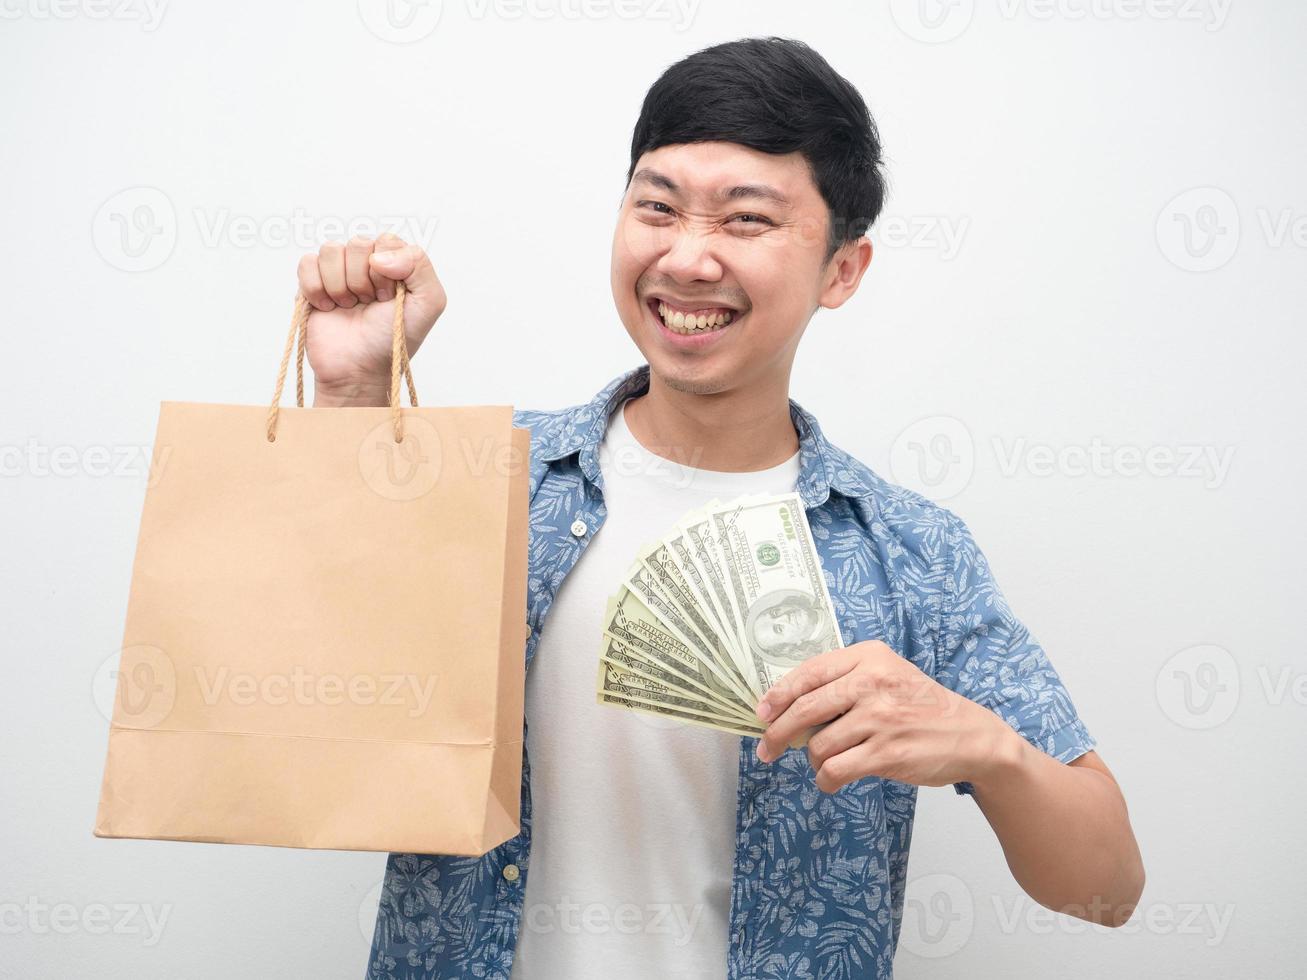 felicidad del hombre asiático con las compras, hombre alegre con mucho dinero y bolsa de compras foto